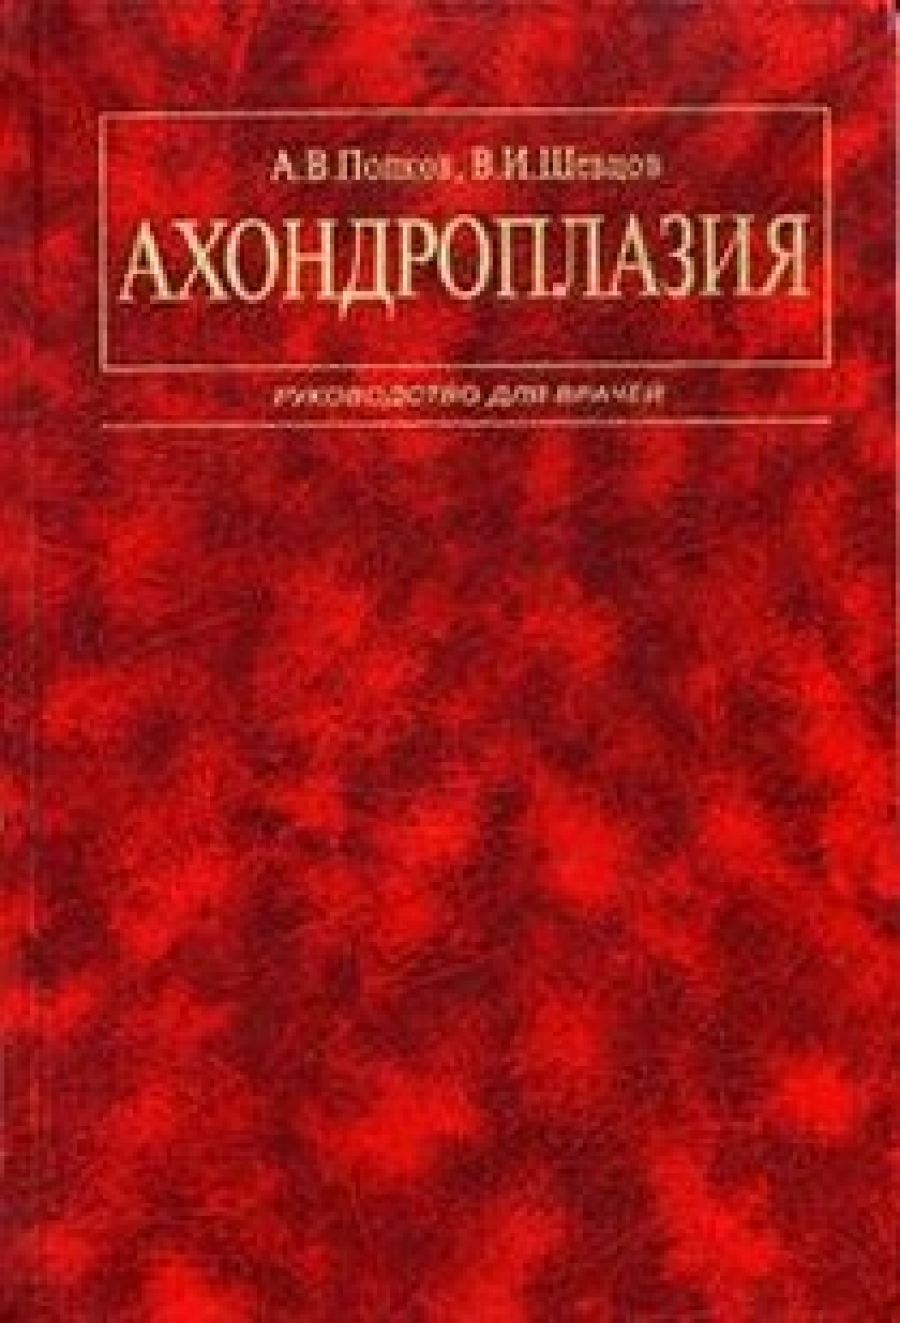 Шевцов В.И., Попков А.В. Ахондроплазия 